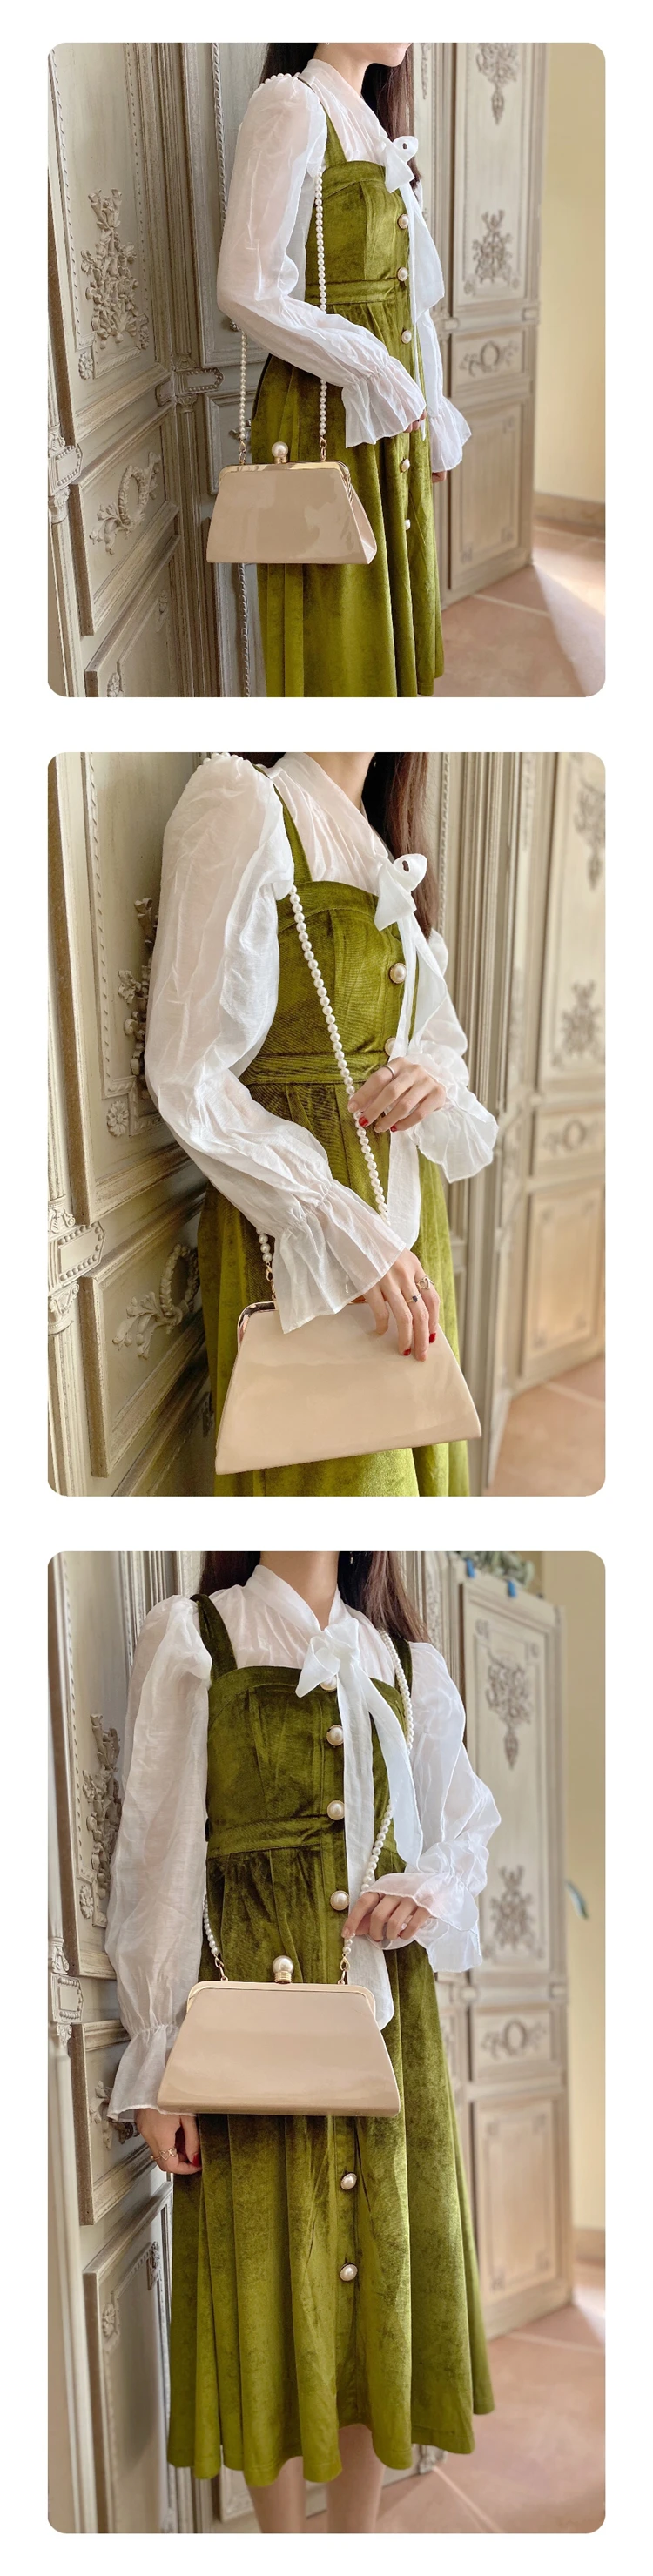 Женская Роскошная женская сумка через плечо на одно плечо, осень, брендовая дизайнерская посылка, лакированная кожаная сумка, сумка с перламутровым зажимом